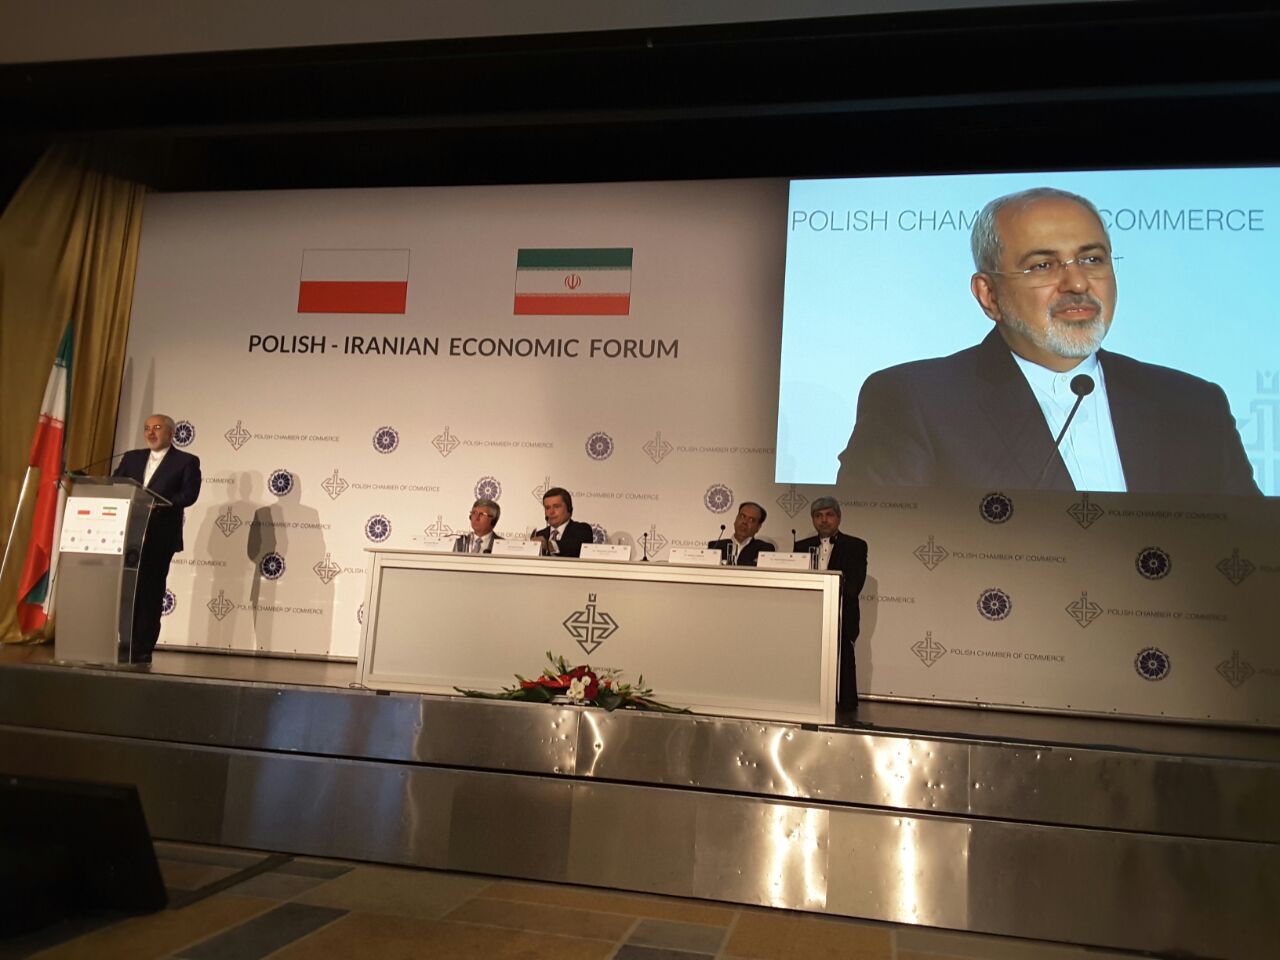 ظریف در همایش اقتصادی مشترک ایران و لهستان حضور یافت